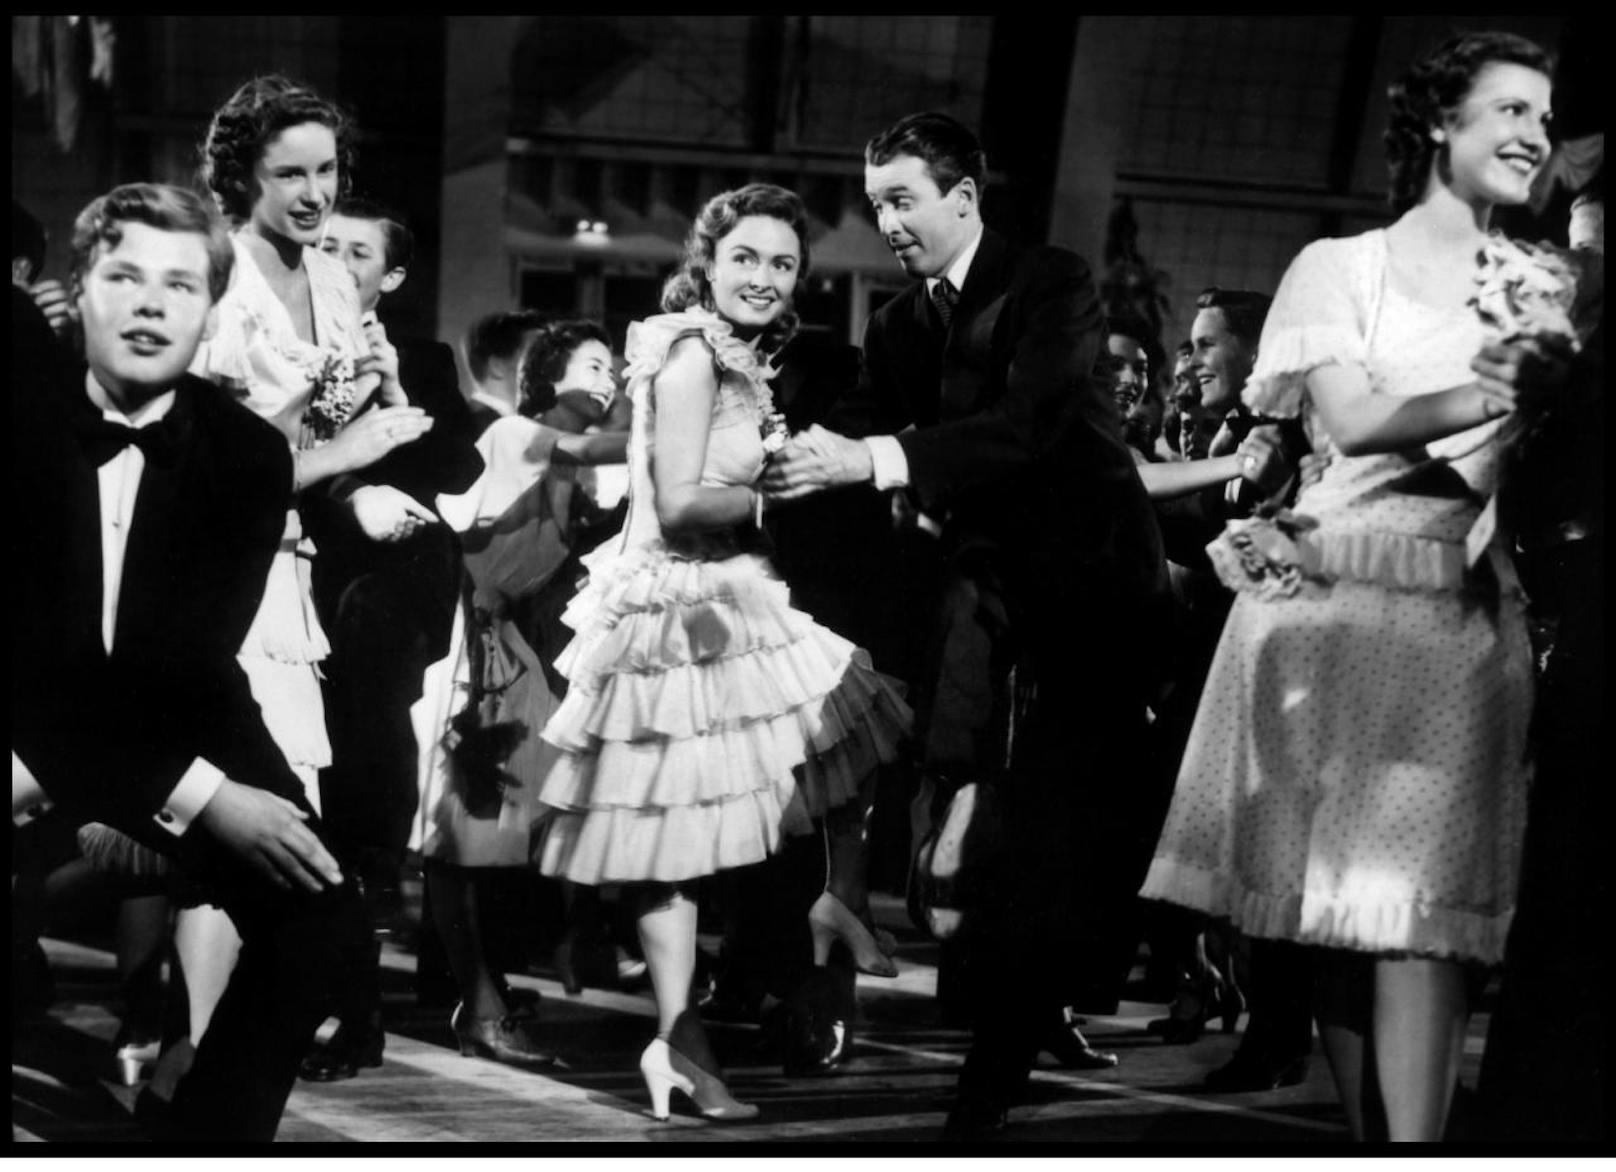 22.50 Uhr, Servus TV: "Ist das Leben nicht schön?". 1946. George Baileys verliert in der Weihnachtsnacht wegen eines Missgeschicks seinen Lebensmut verliert und will von der Brücke stürzen. Doch dann wird er von einem Engel gerettet. Mit James Stewart und Donna Reed.